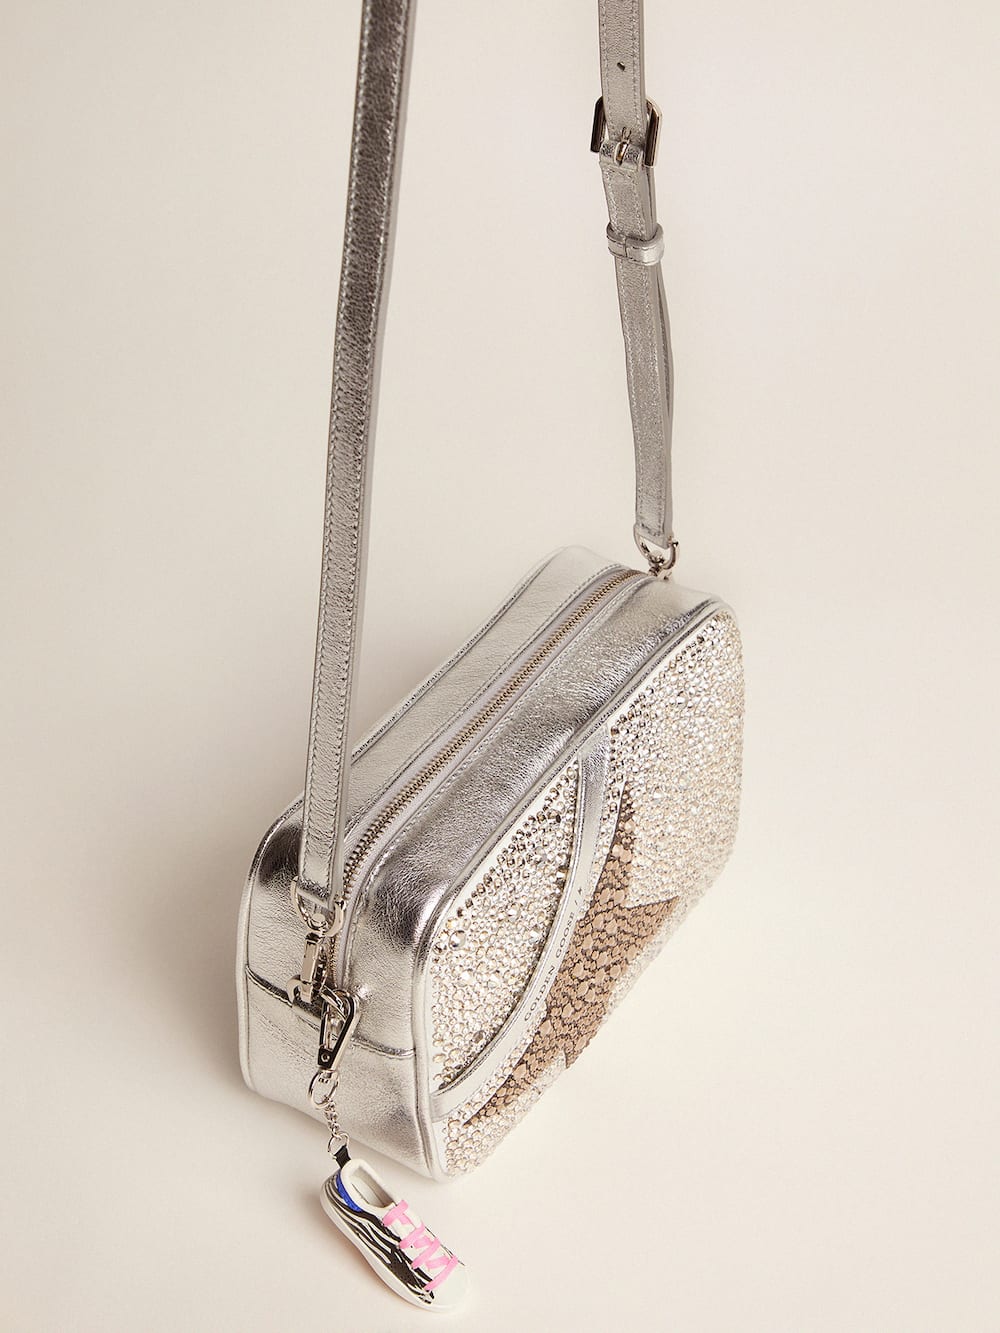 Golden Goose - Tasche Star Bag aus beschichtetem Leder mit Swarovski-Kristallen in 